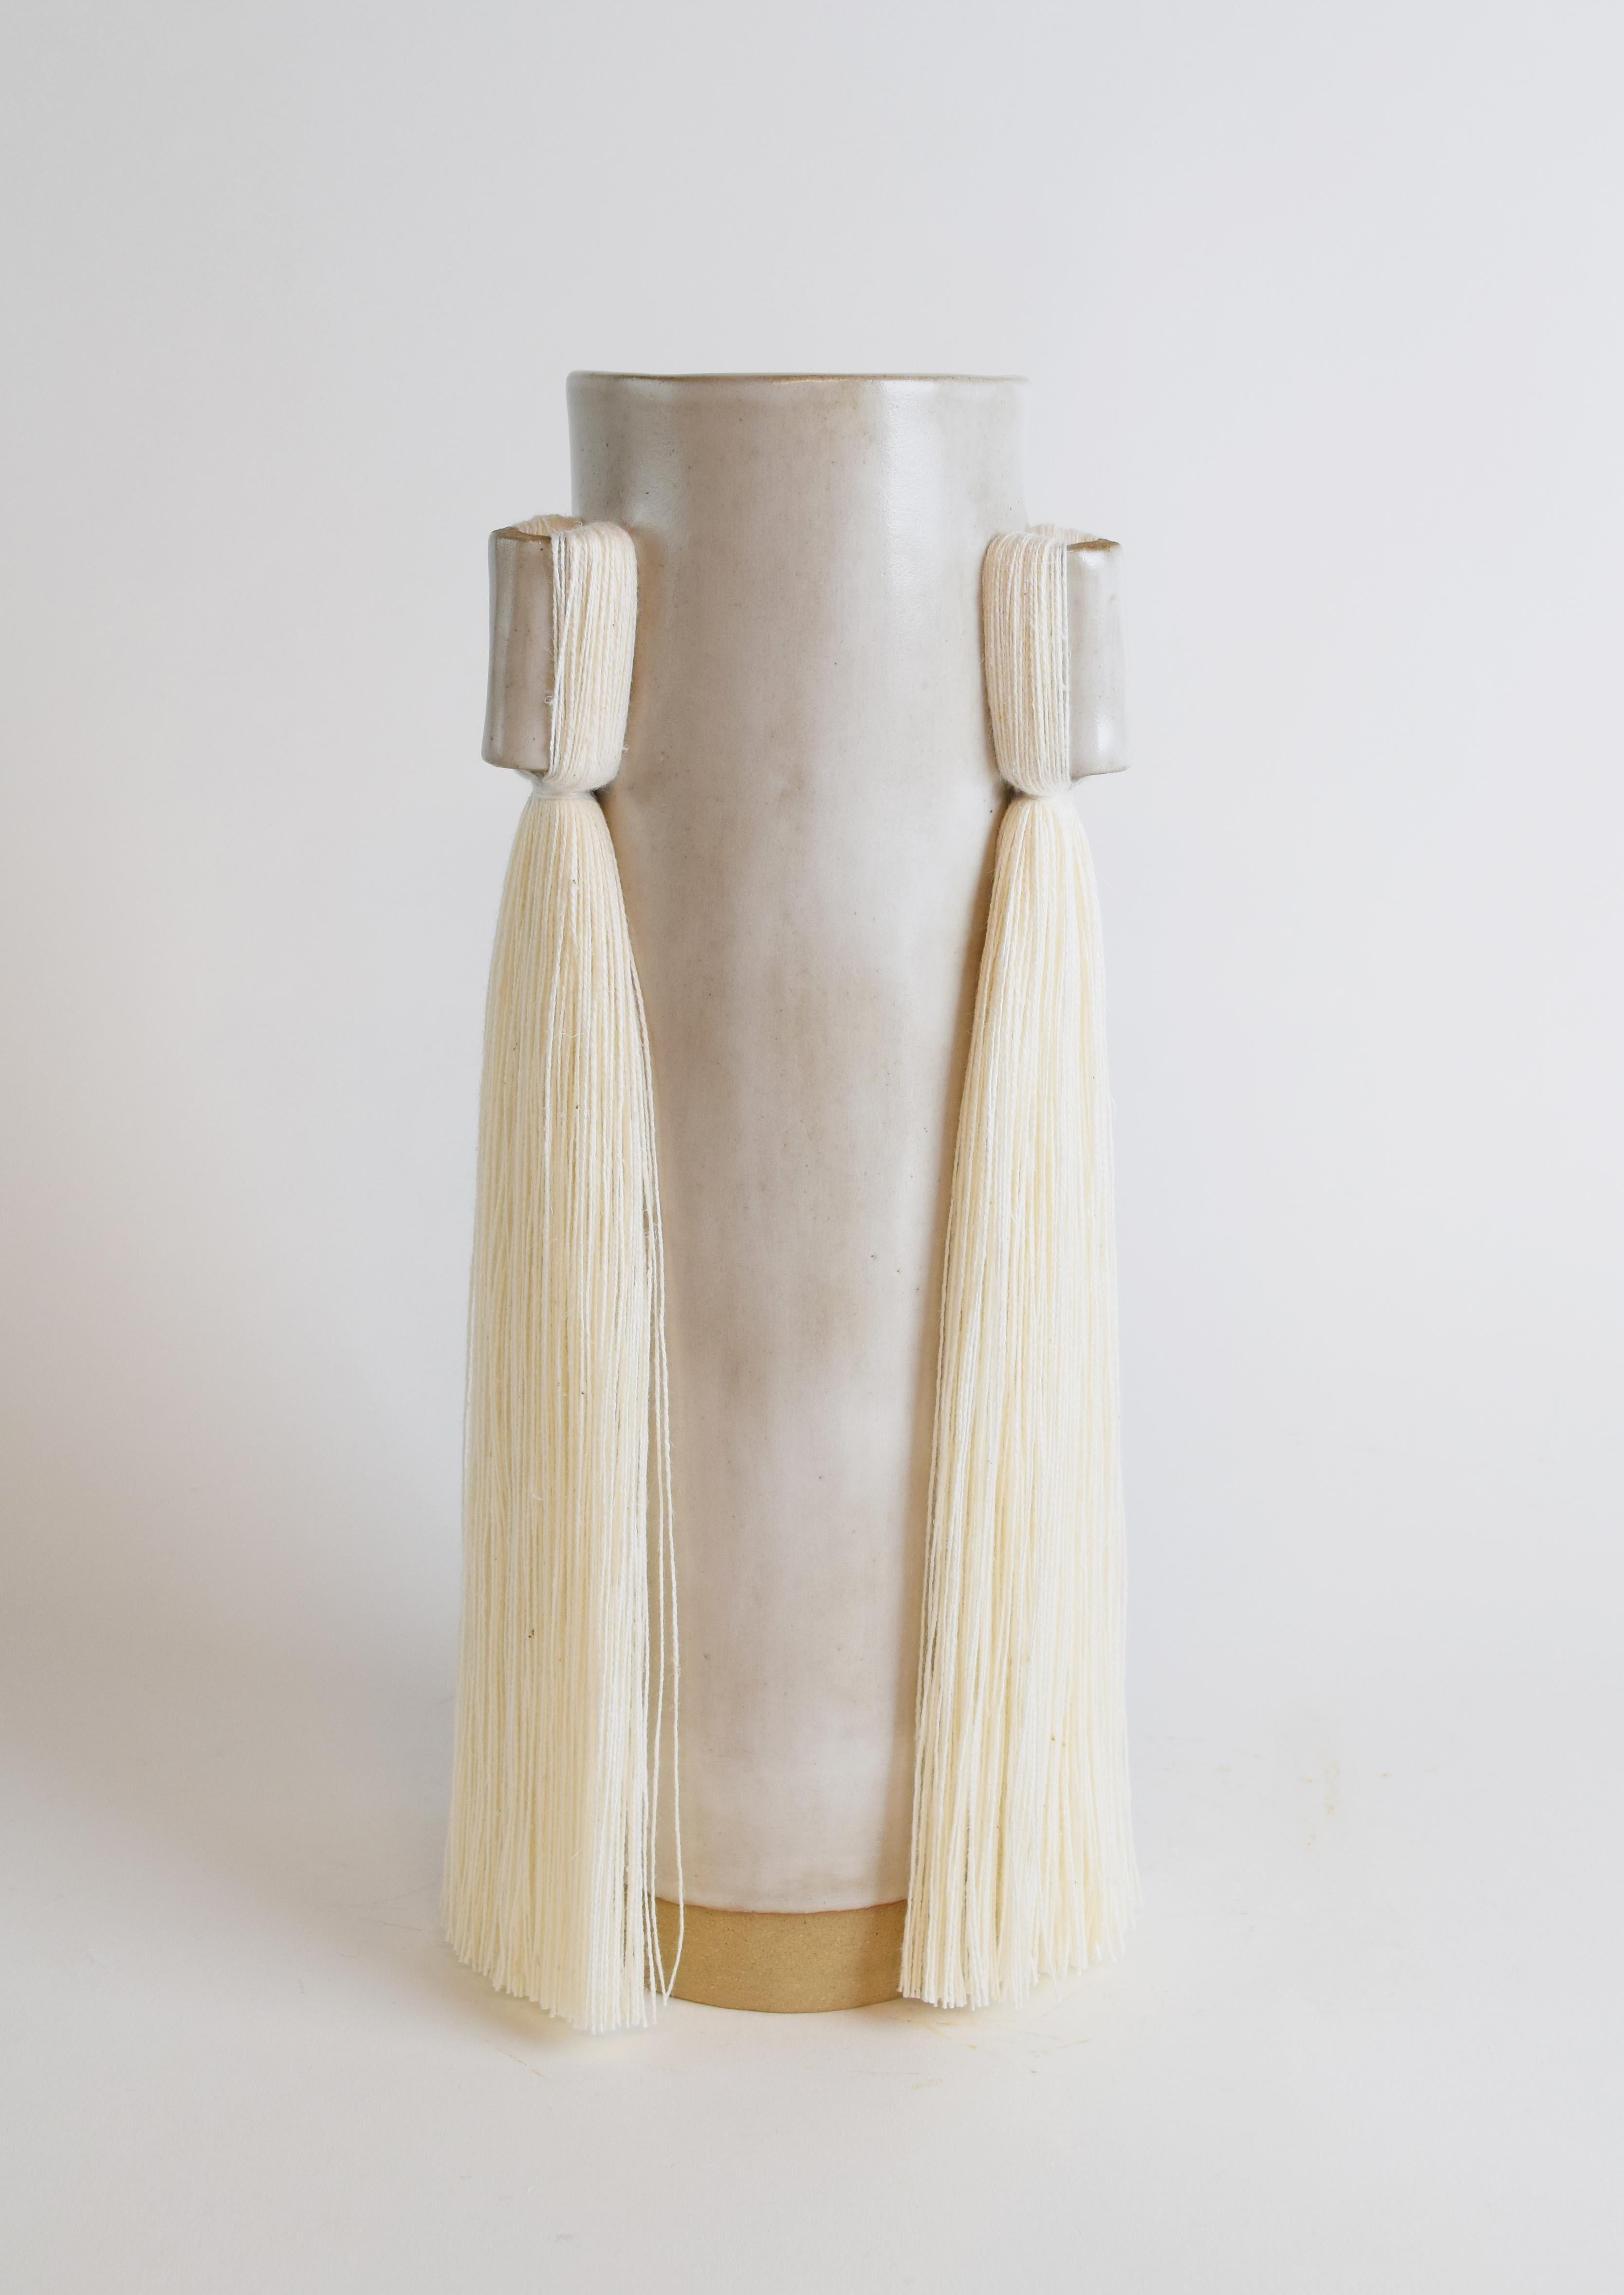 Vase #607 von Karen Gayle Tinney

Fransen schmücken 3 Seiten dieser Vase, die großzügig bemessen ist, um ein großes Blumenarrangement aufzunehmen.

Handgeformtes Steingut mit satinweißer Glasur und weißen Baumwollfransen. Die Innenseite ist weiß